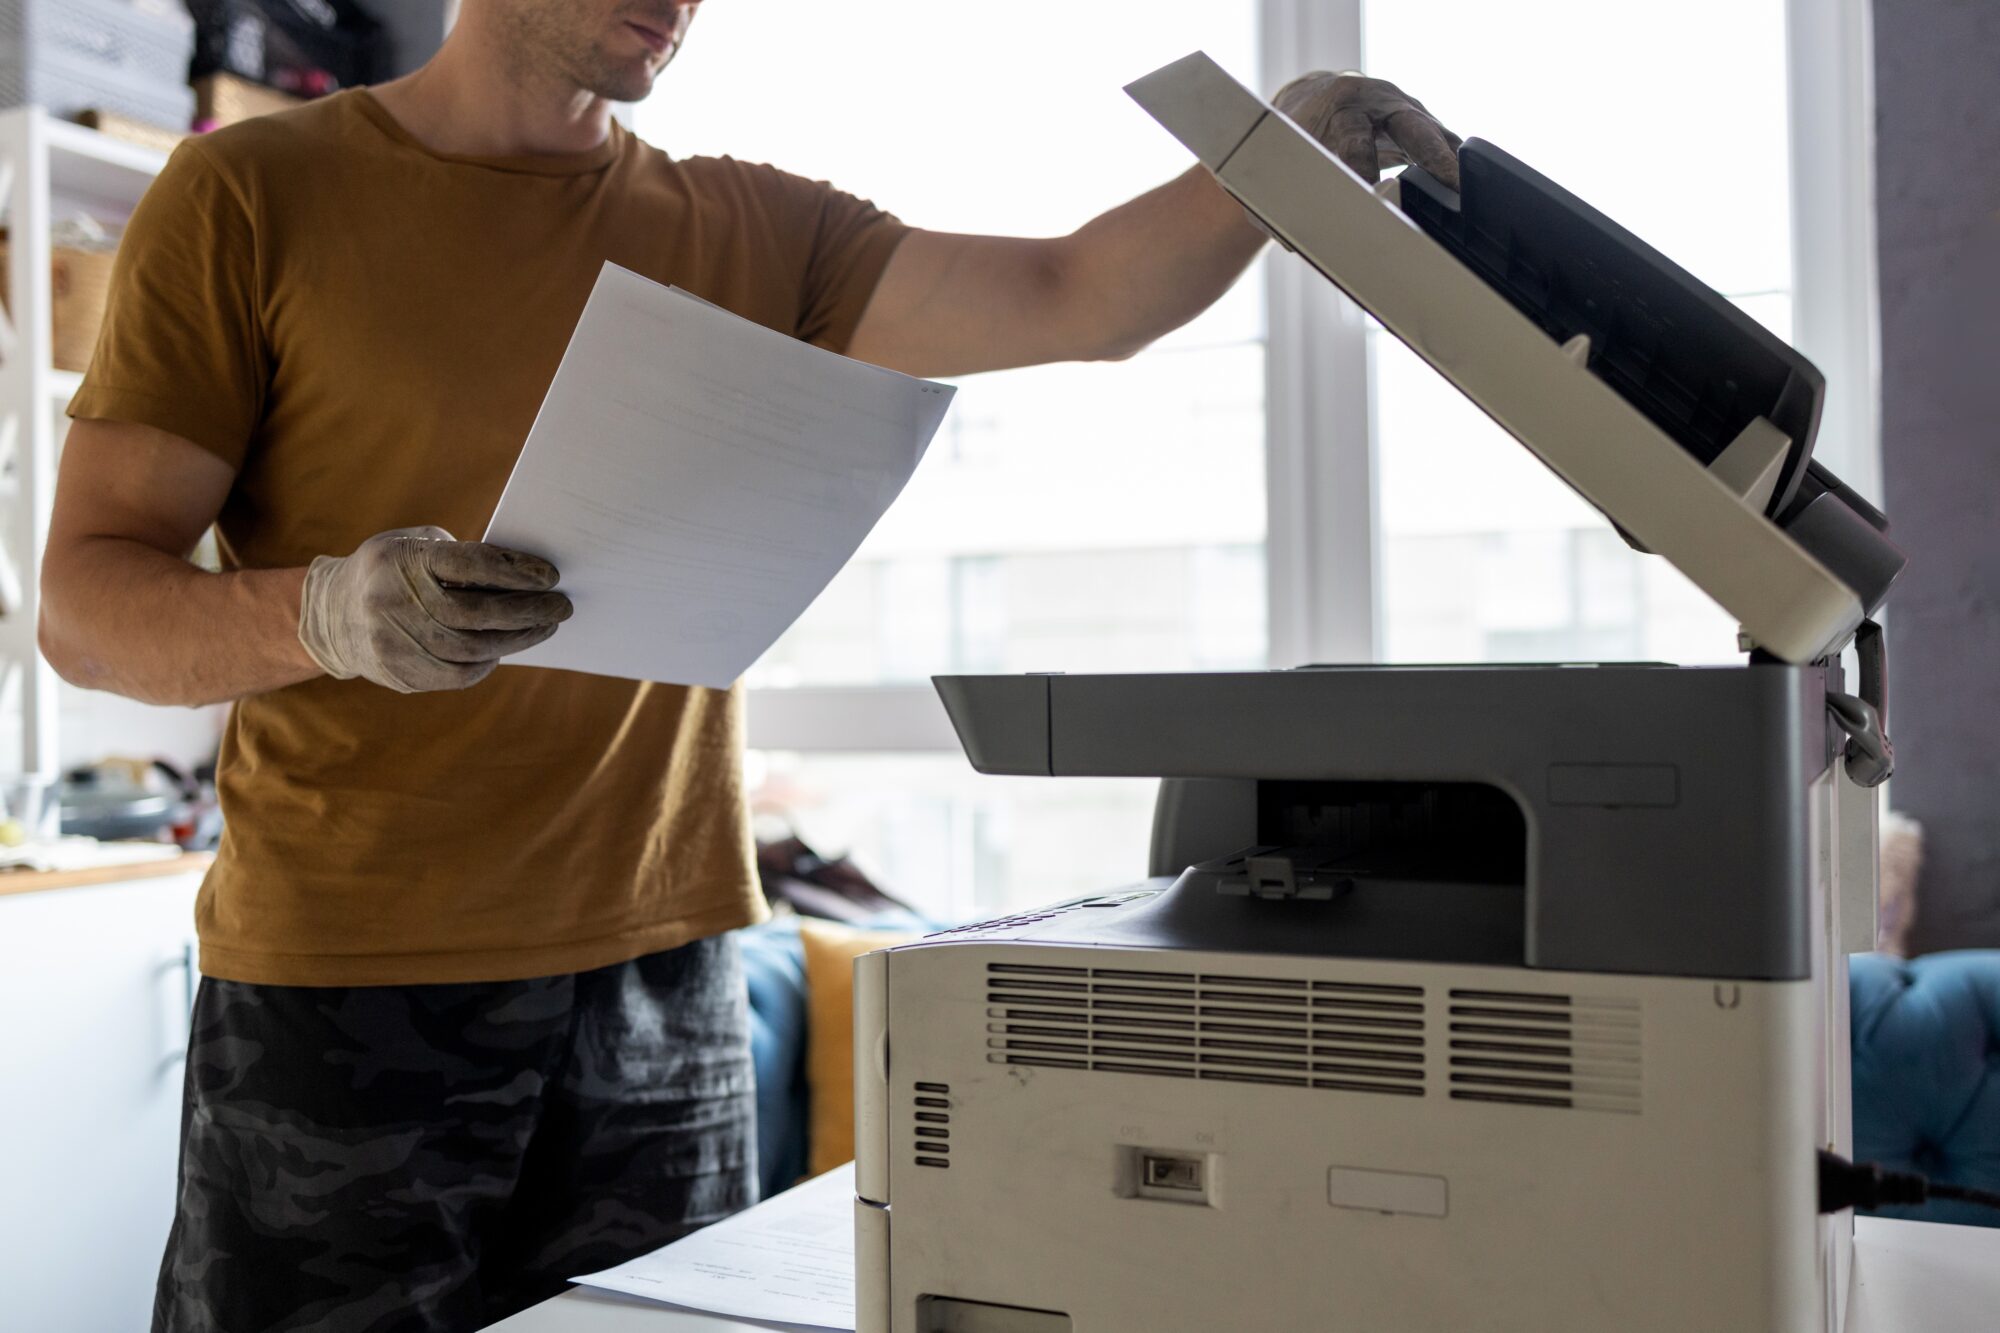 De juiste printer voor je zakelijke behoeften kiezen